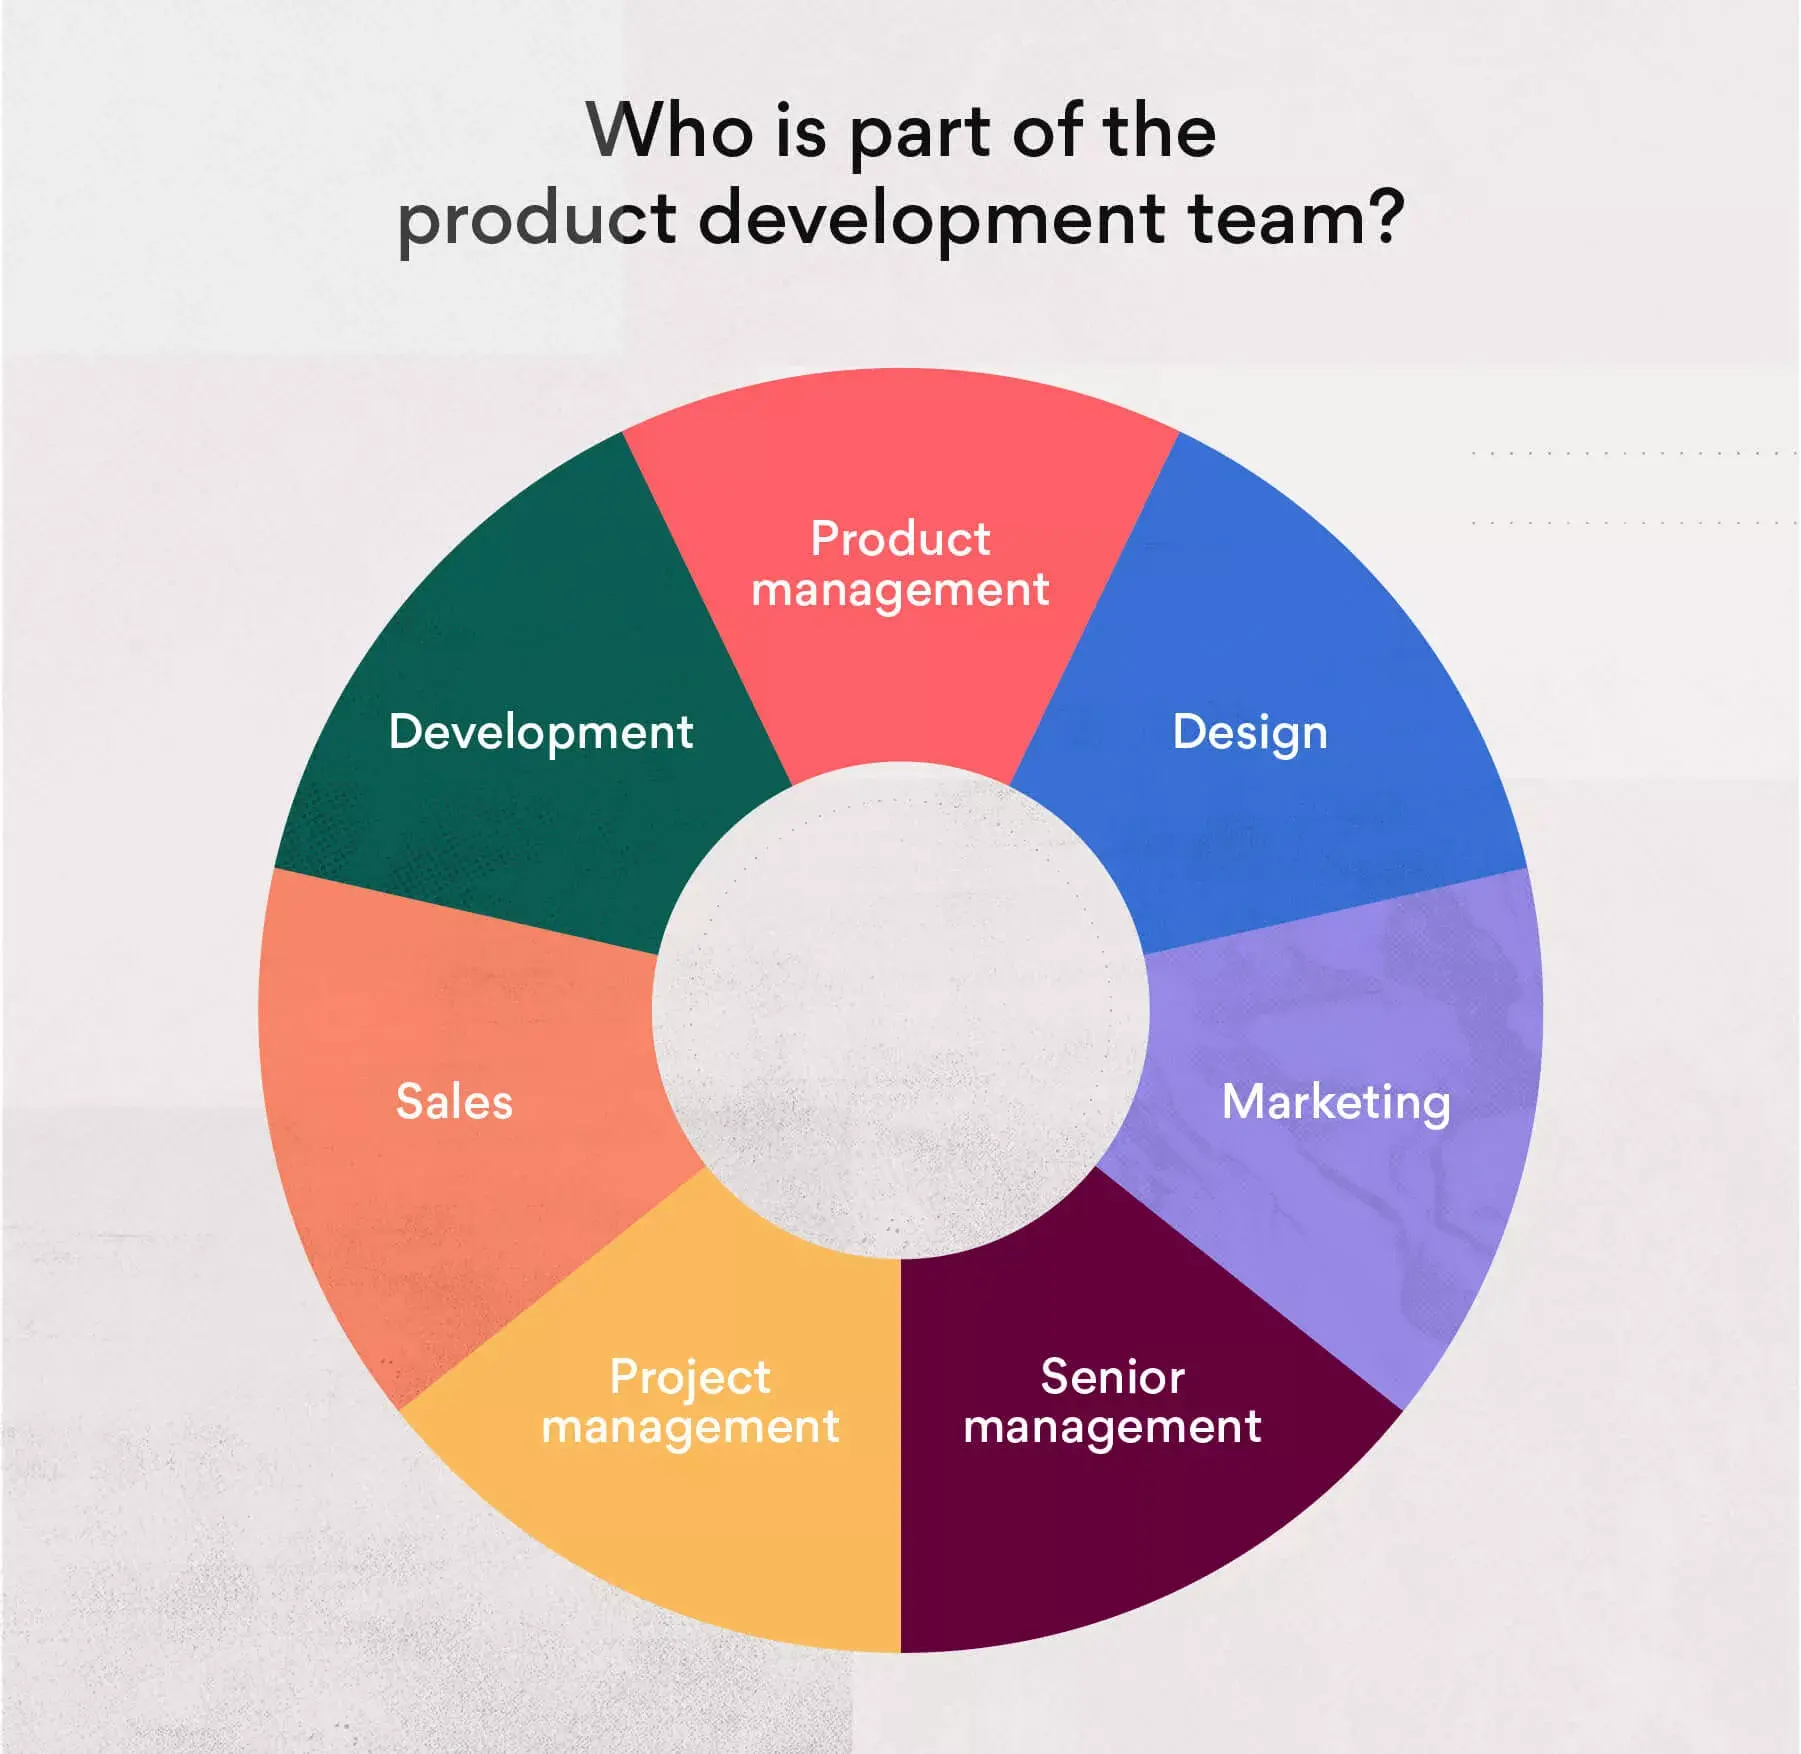 Vem ingår i produktutvecklingsteamet?